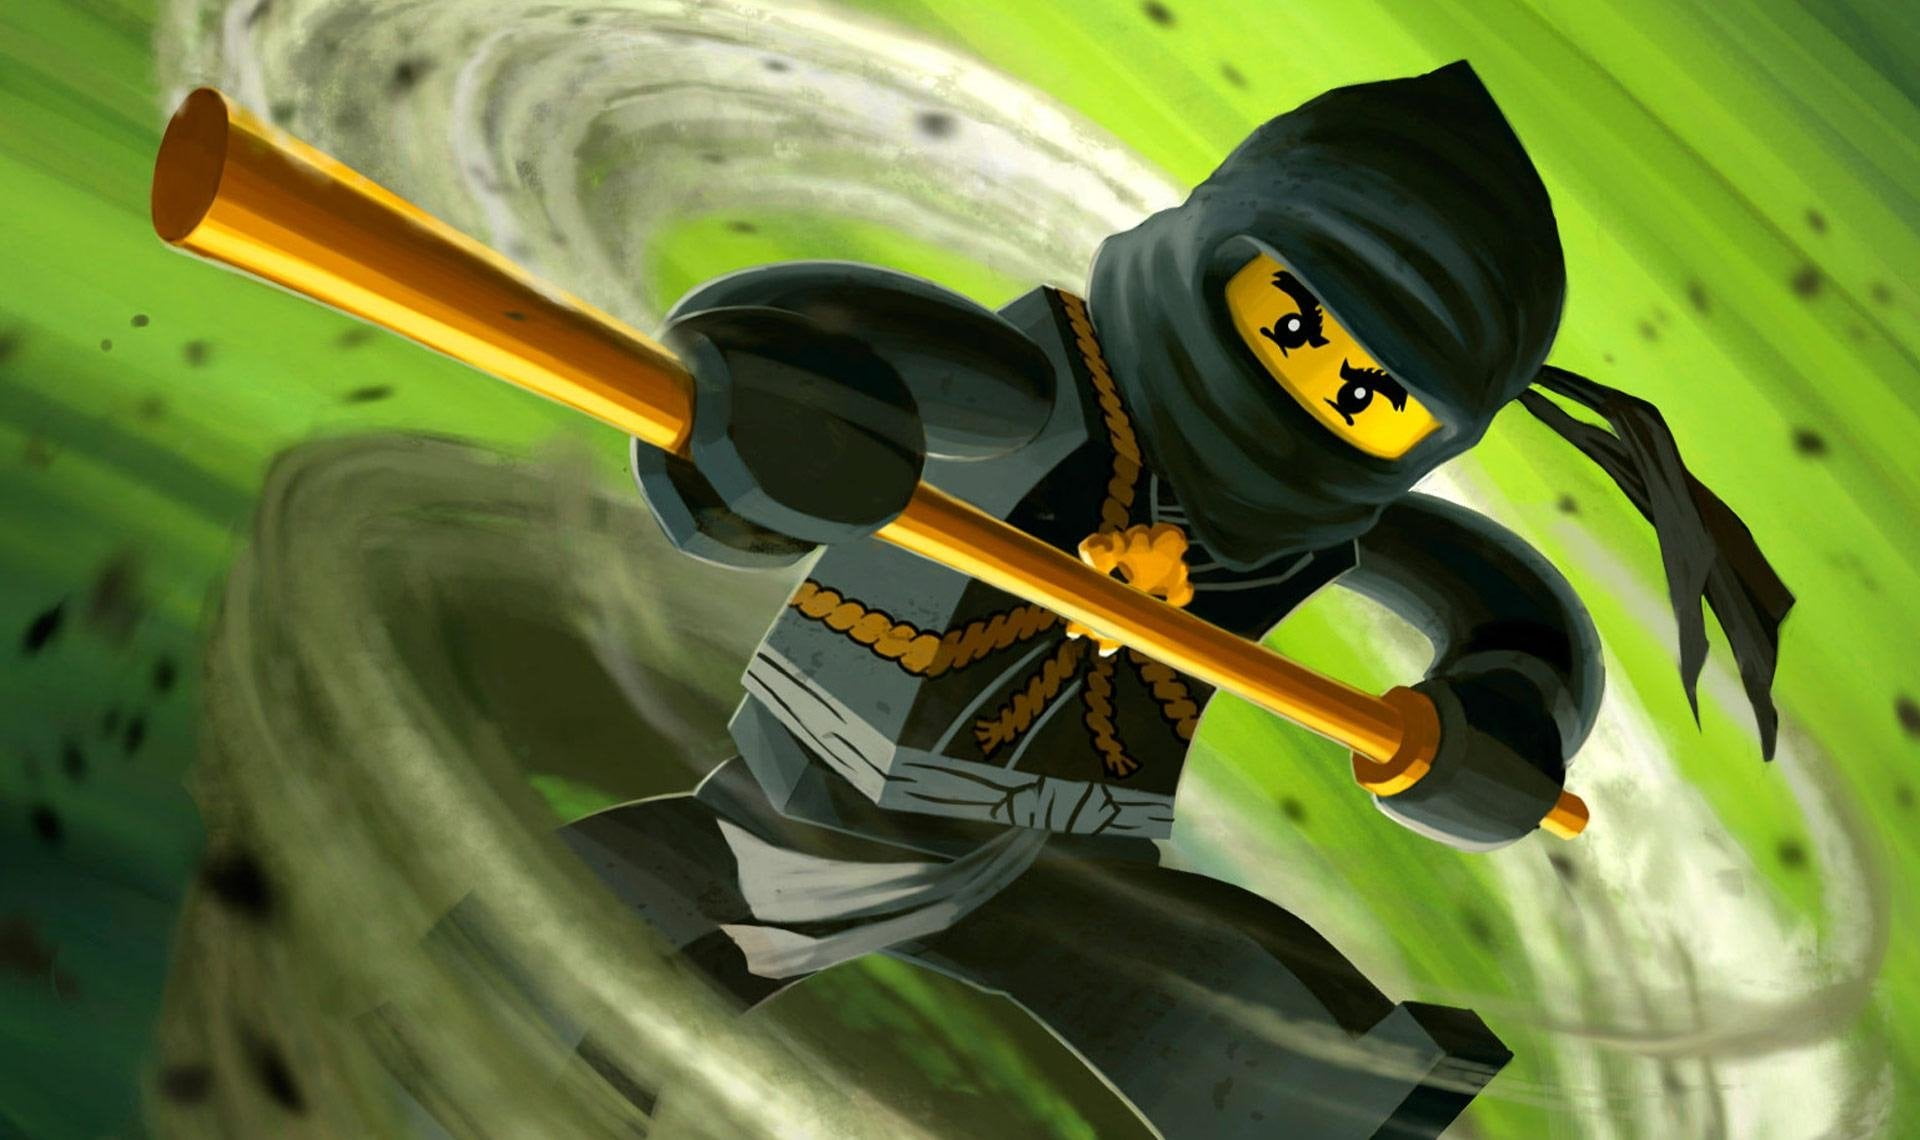 Lego, Lego Ninjago: Masters of Spinjitzu, close-up, day, nature